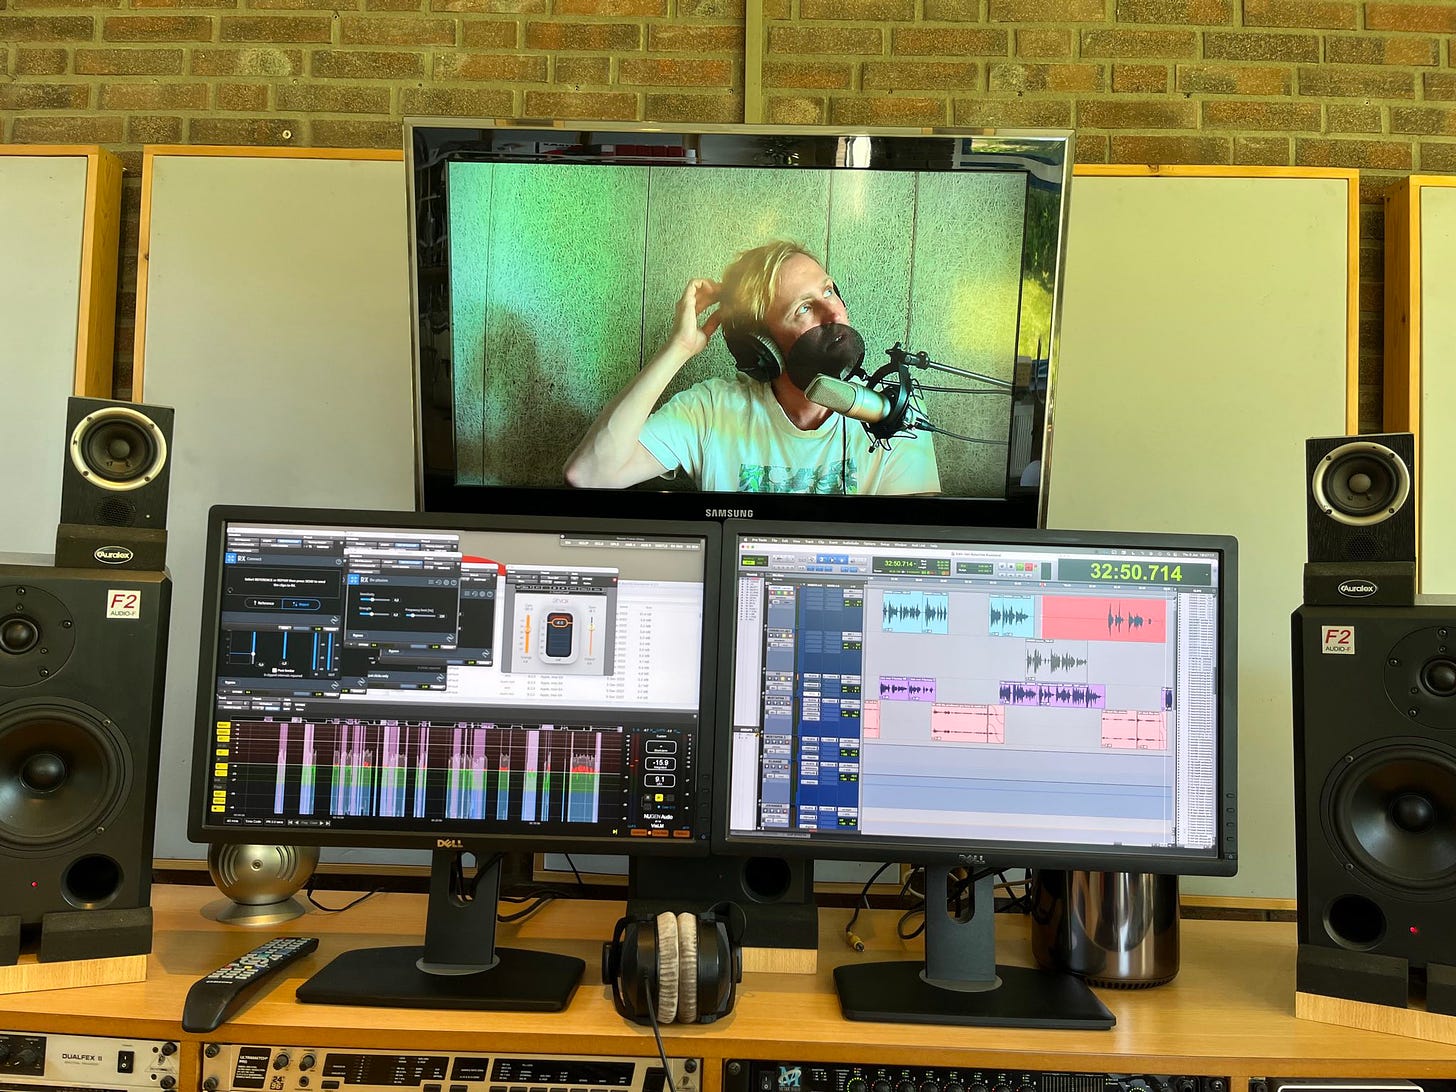 Foto van een bureau met daarop twee schermen met montage software er op, twee speakers en een grote TV erboven waarop je lieven ziet zitten in achter een microfoon met een koptelefoon op.